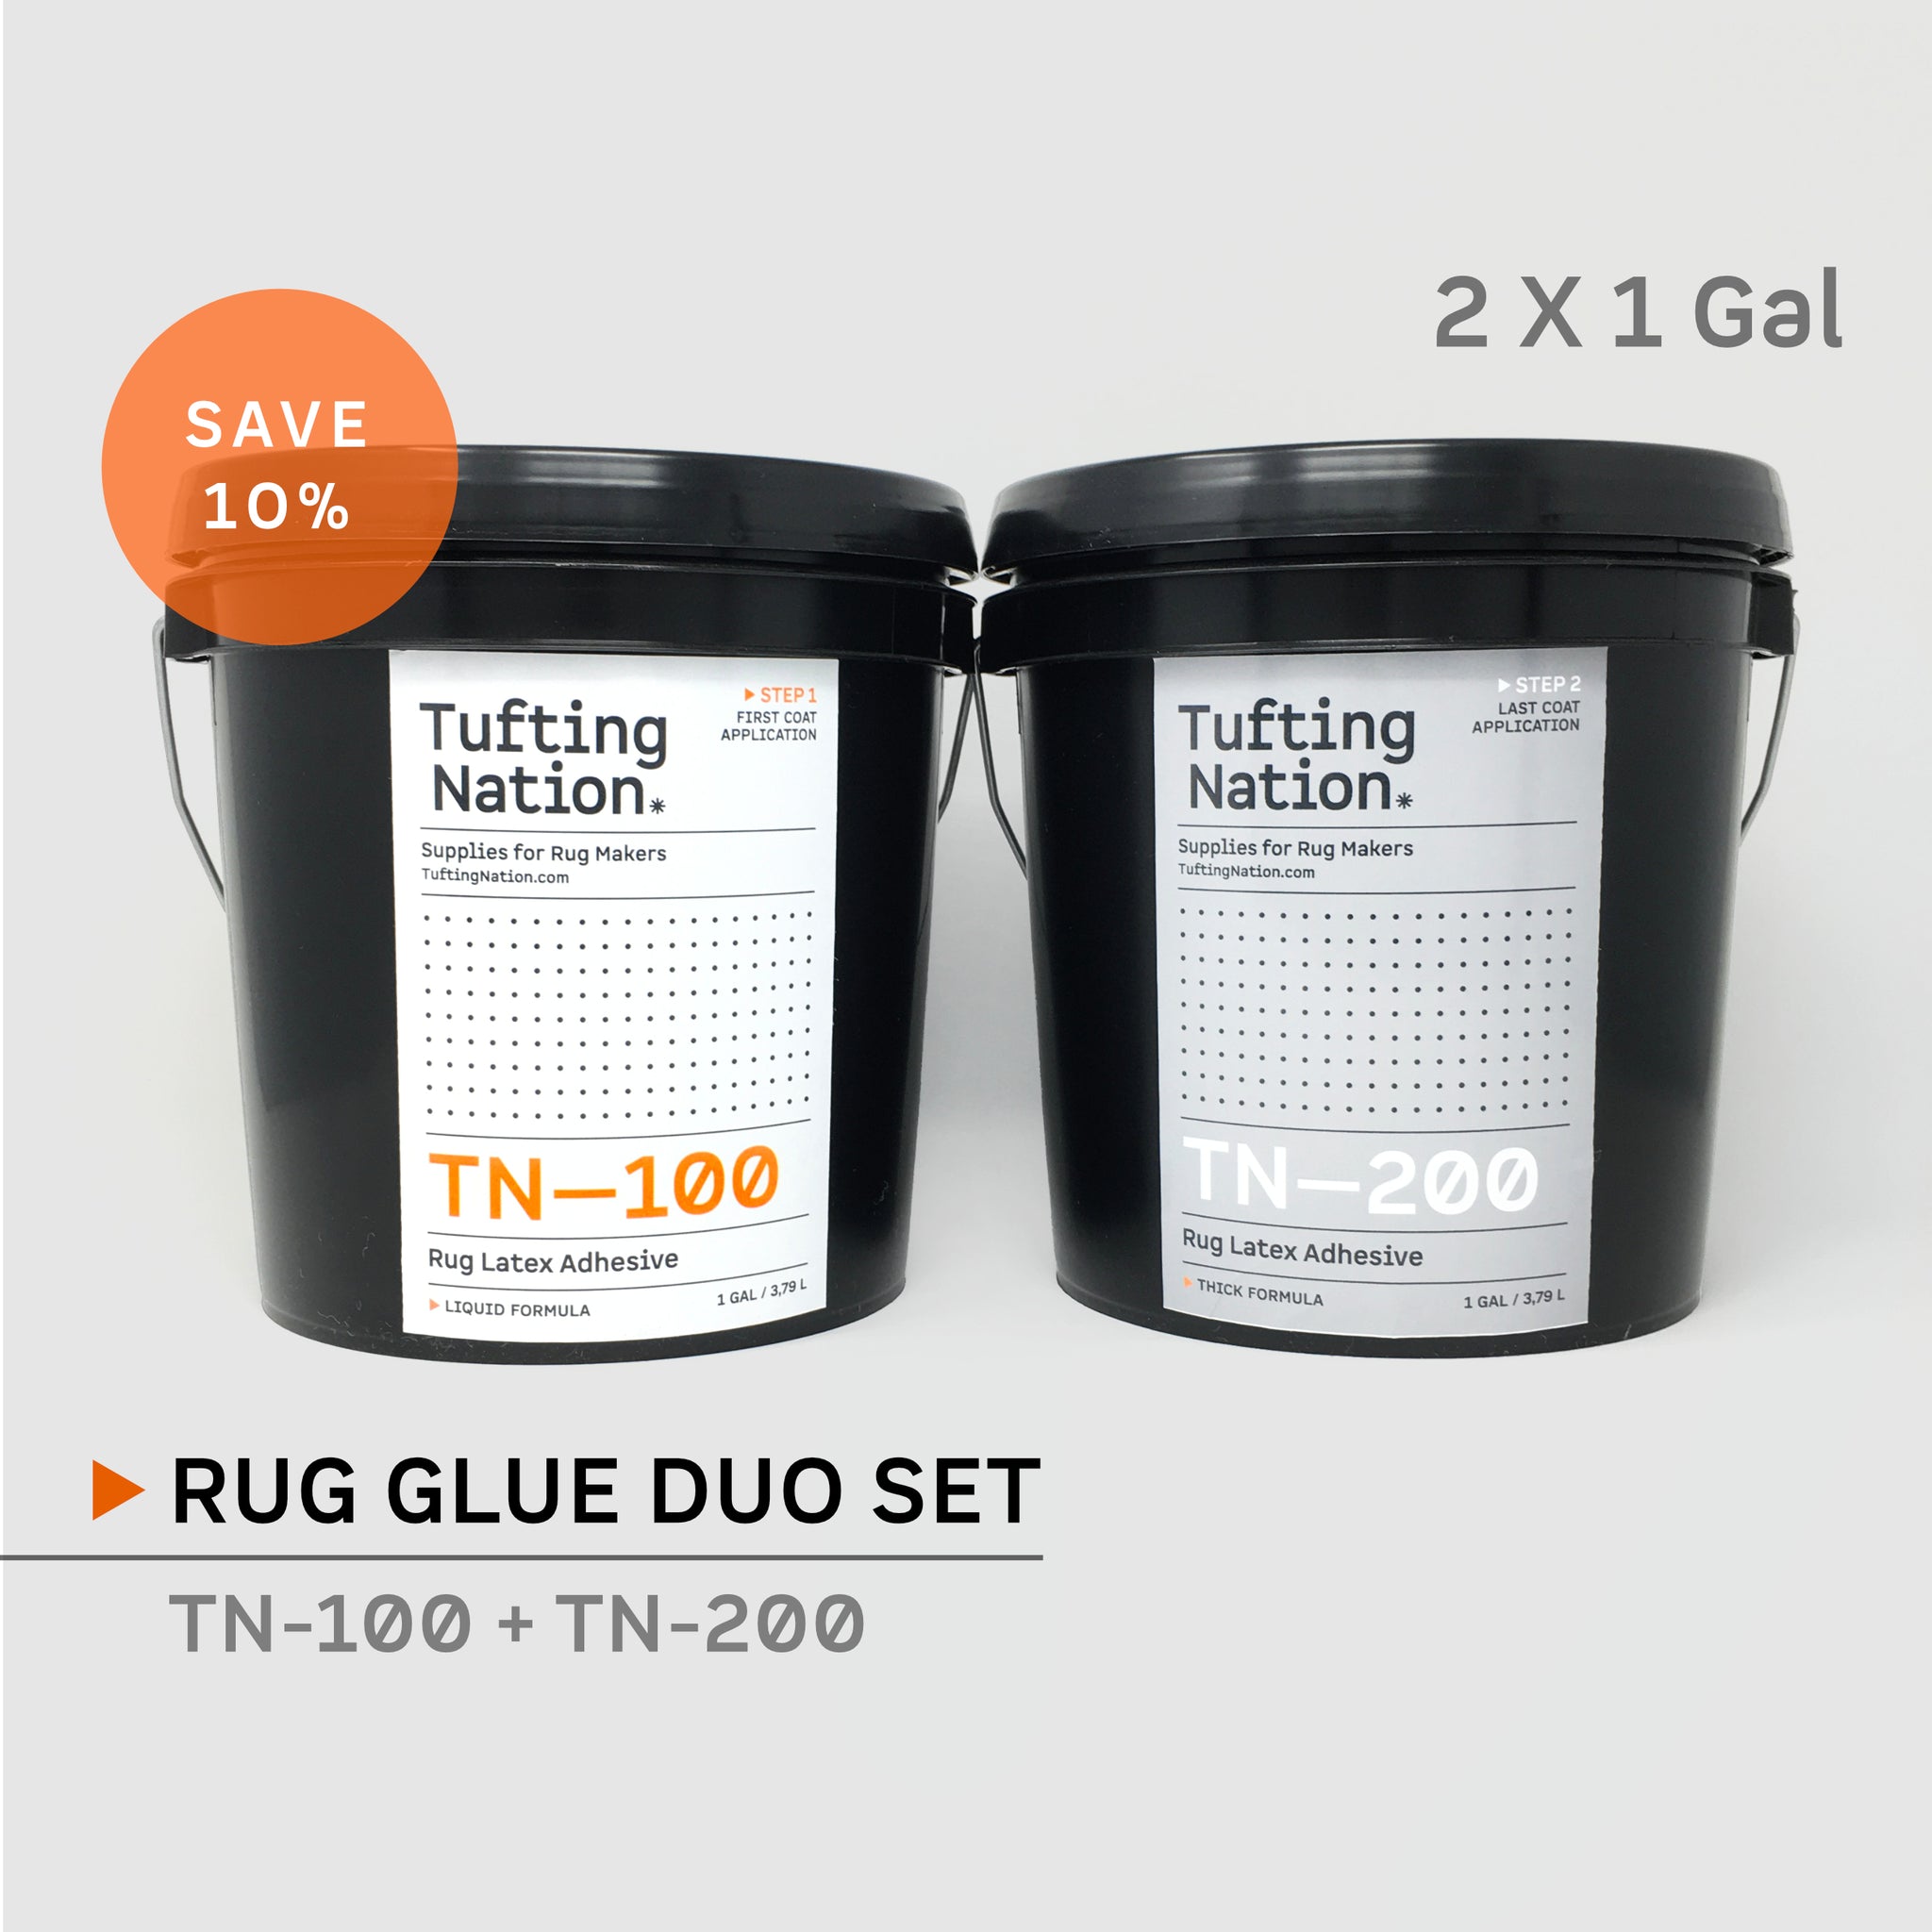 Rug Glue Duo Set, TN-100 + TN-200